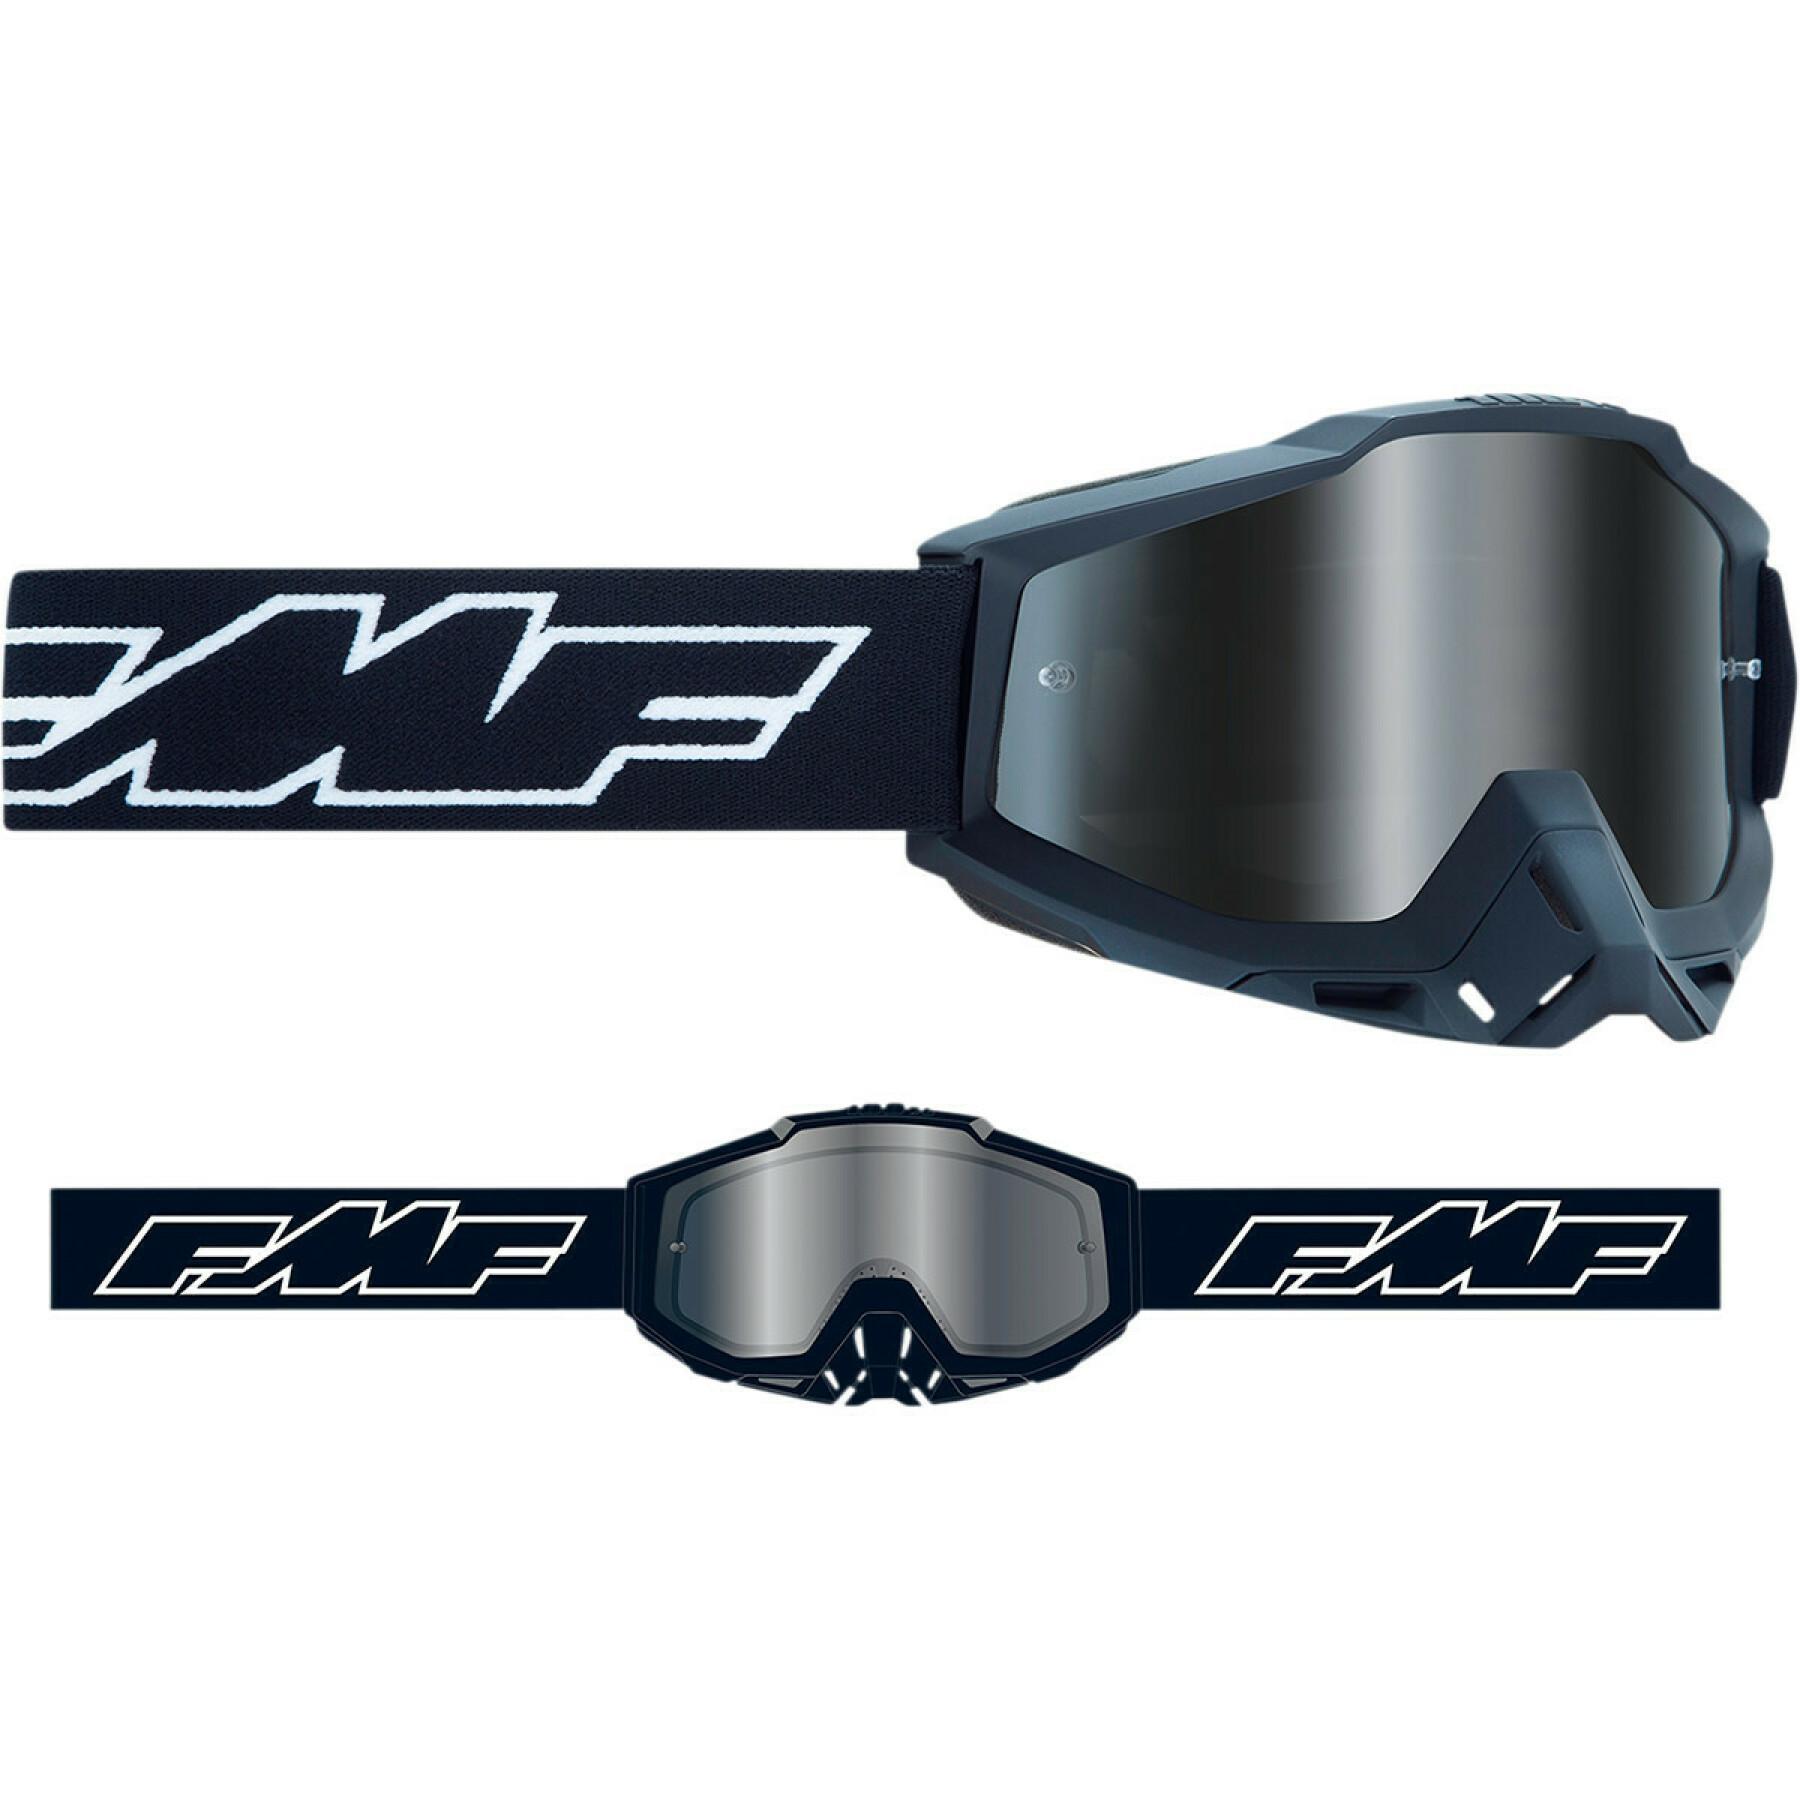 Gafas de cross para moto FMF Vision sand rocket